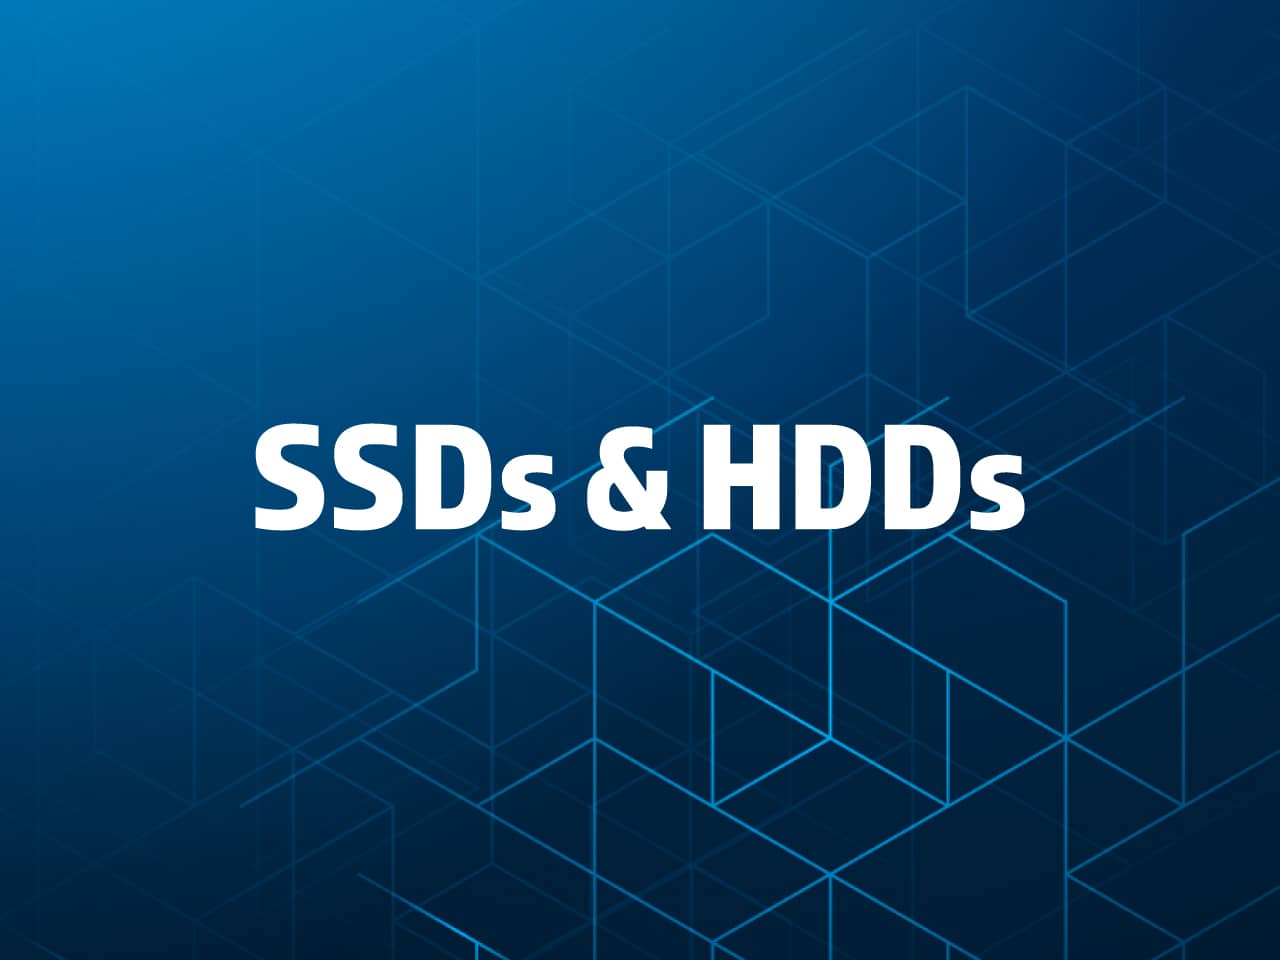 SSDs & HARD DRIVES